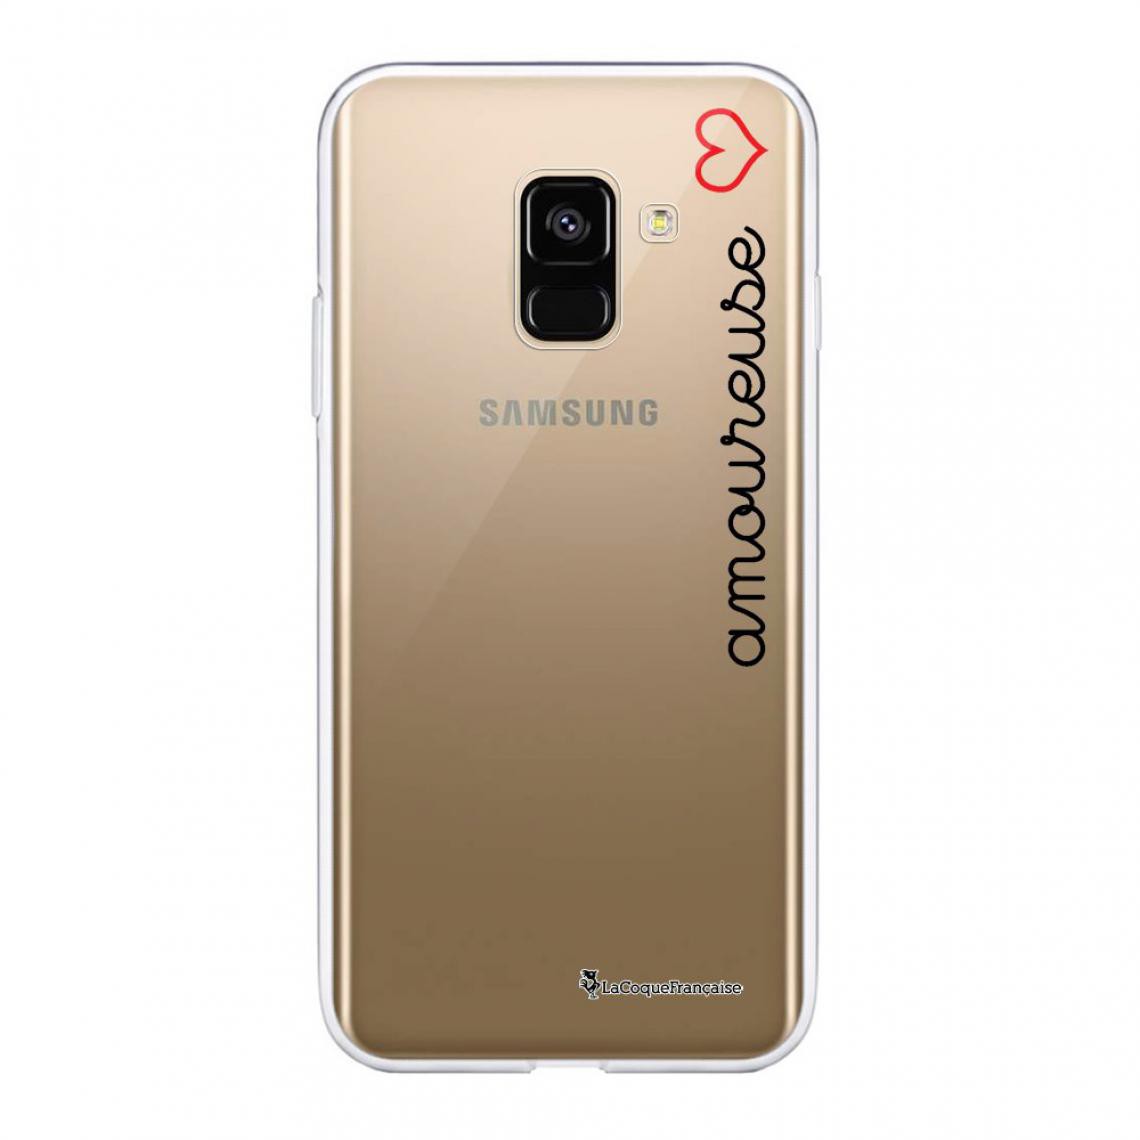 La Coque Francaise - Coque Samsung Galaxy A8 2018 souple - Coque, étui smartphone